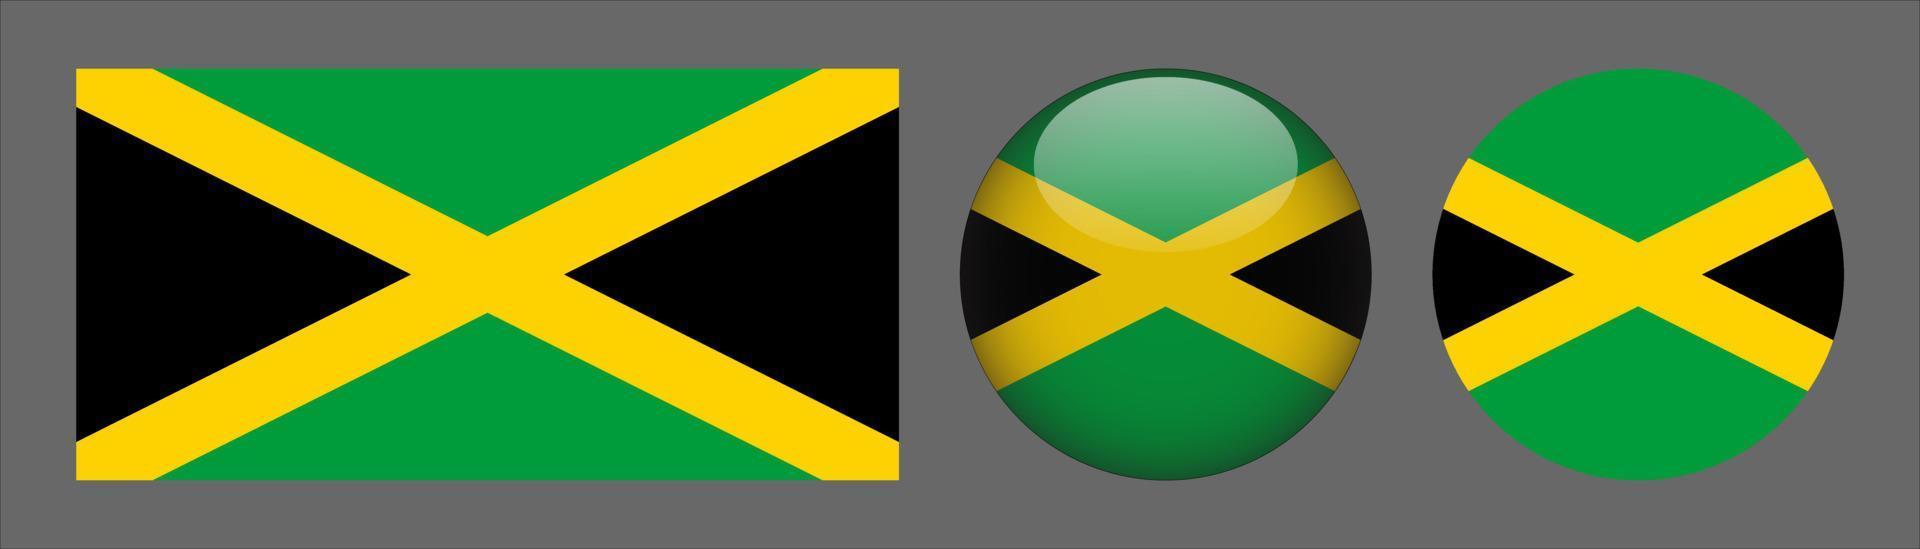 Coleção do conjunto de bandeiras da Jamaica, proporção do tamanho original, 3D arredondado e plano arredondado vetor